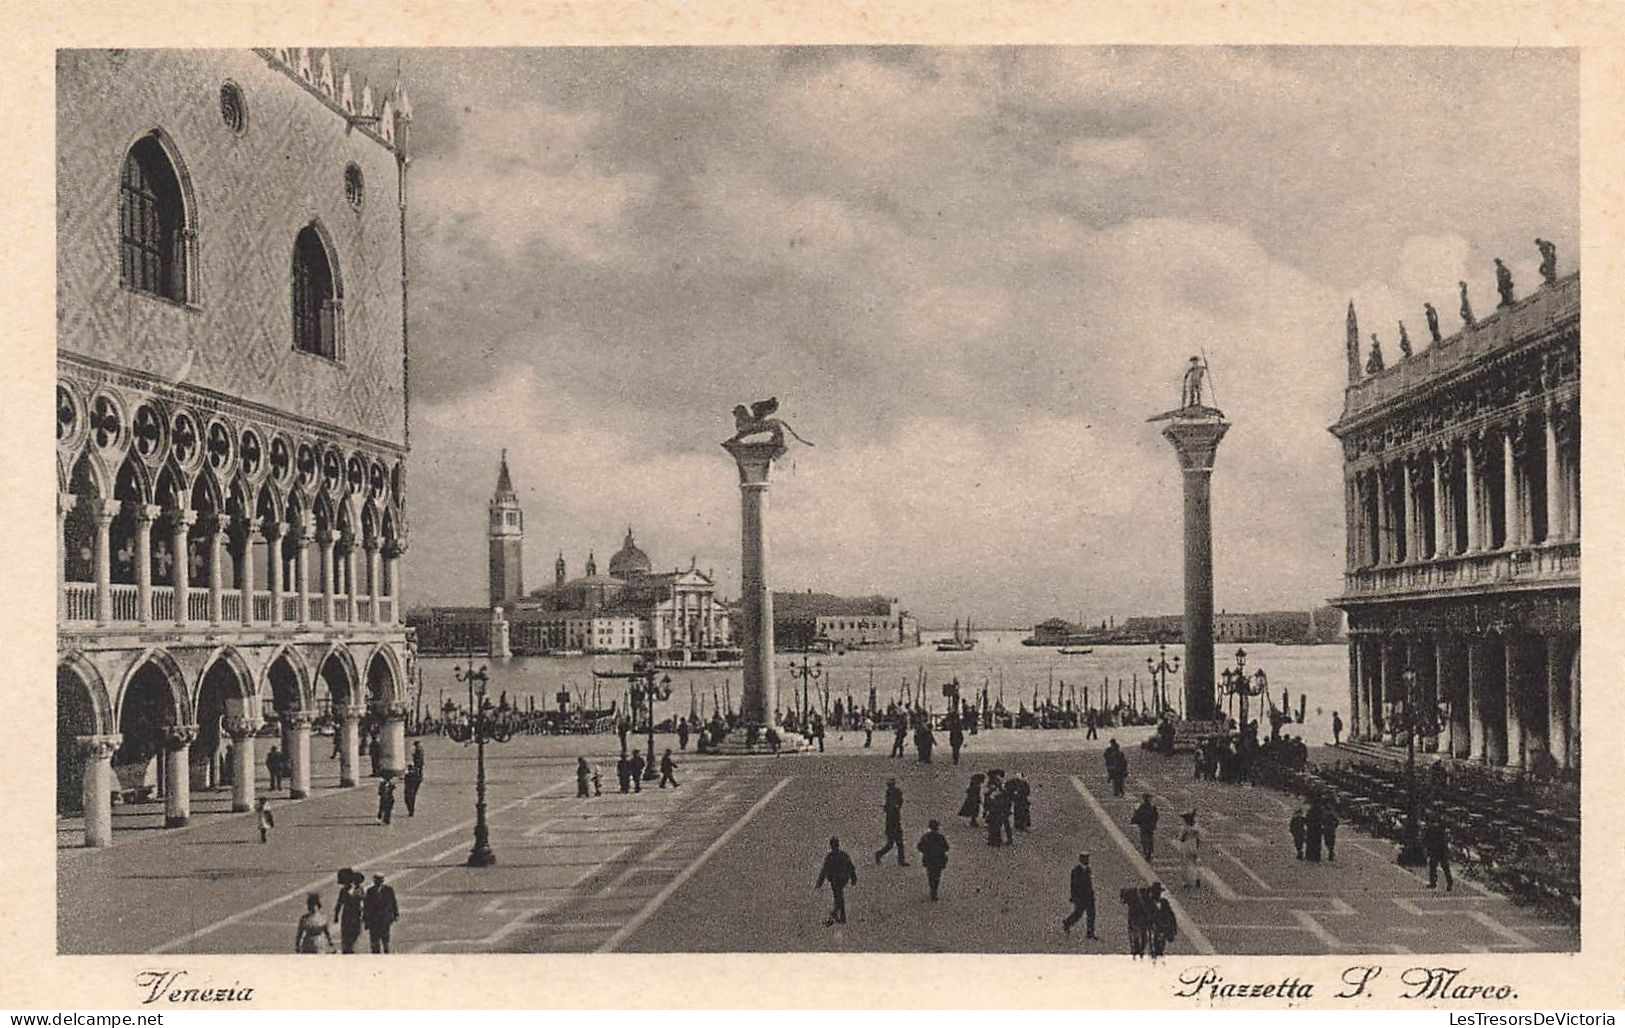 ITALIE - Venezia - Piazetta P Marco - Animé - Vue Générale - Carte Postale Ancienne - Venezia (Venedig)